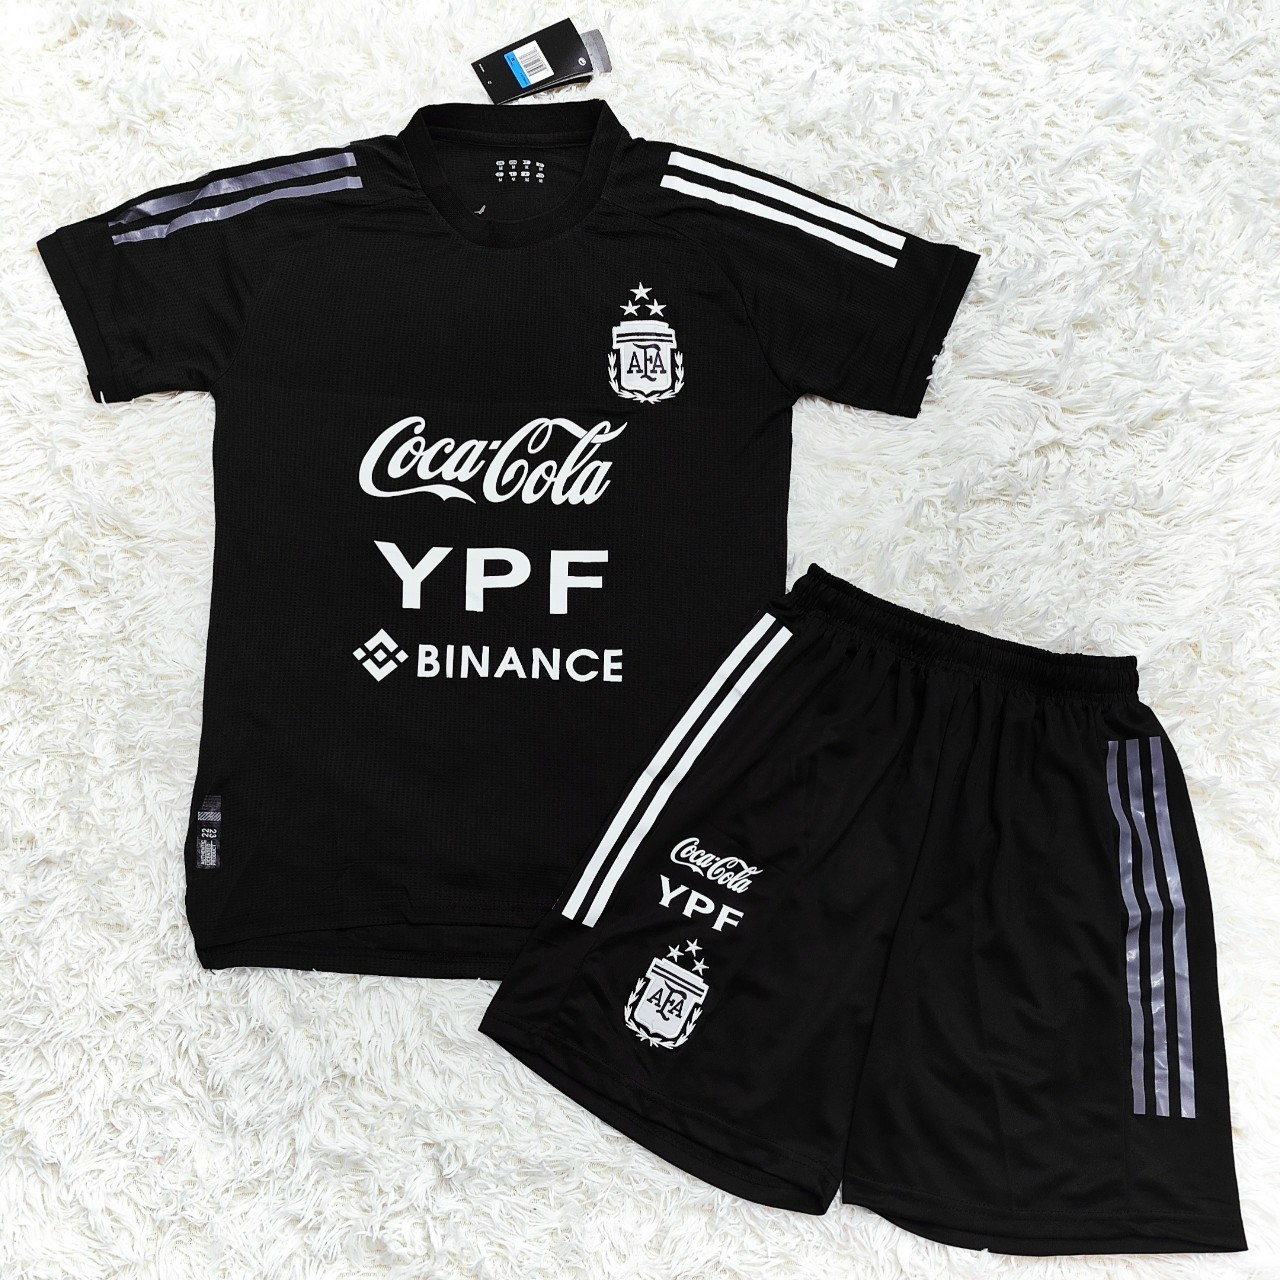 Bộ quần áo đá banh đội tuyển bóng đá Argentina coca cola ypf màu ...